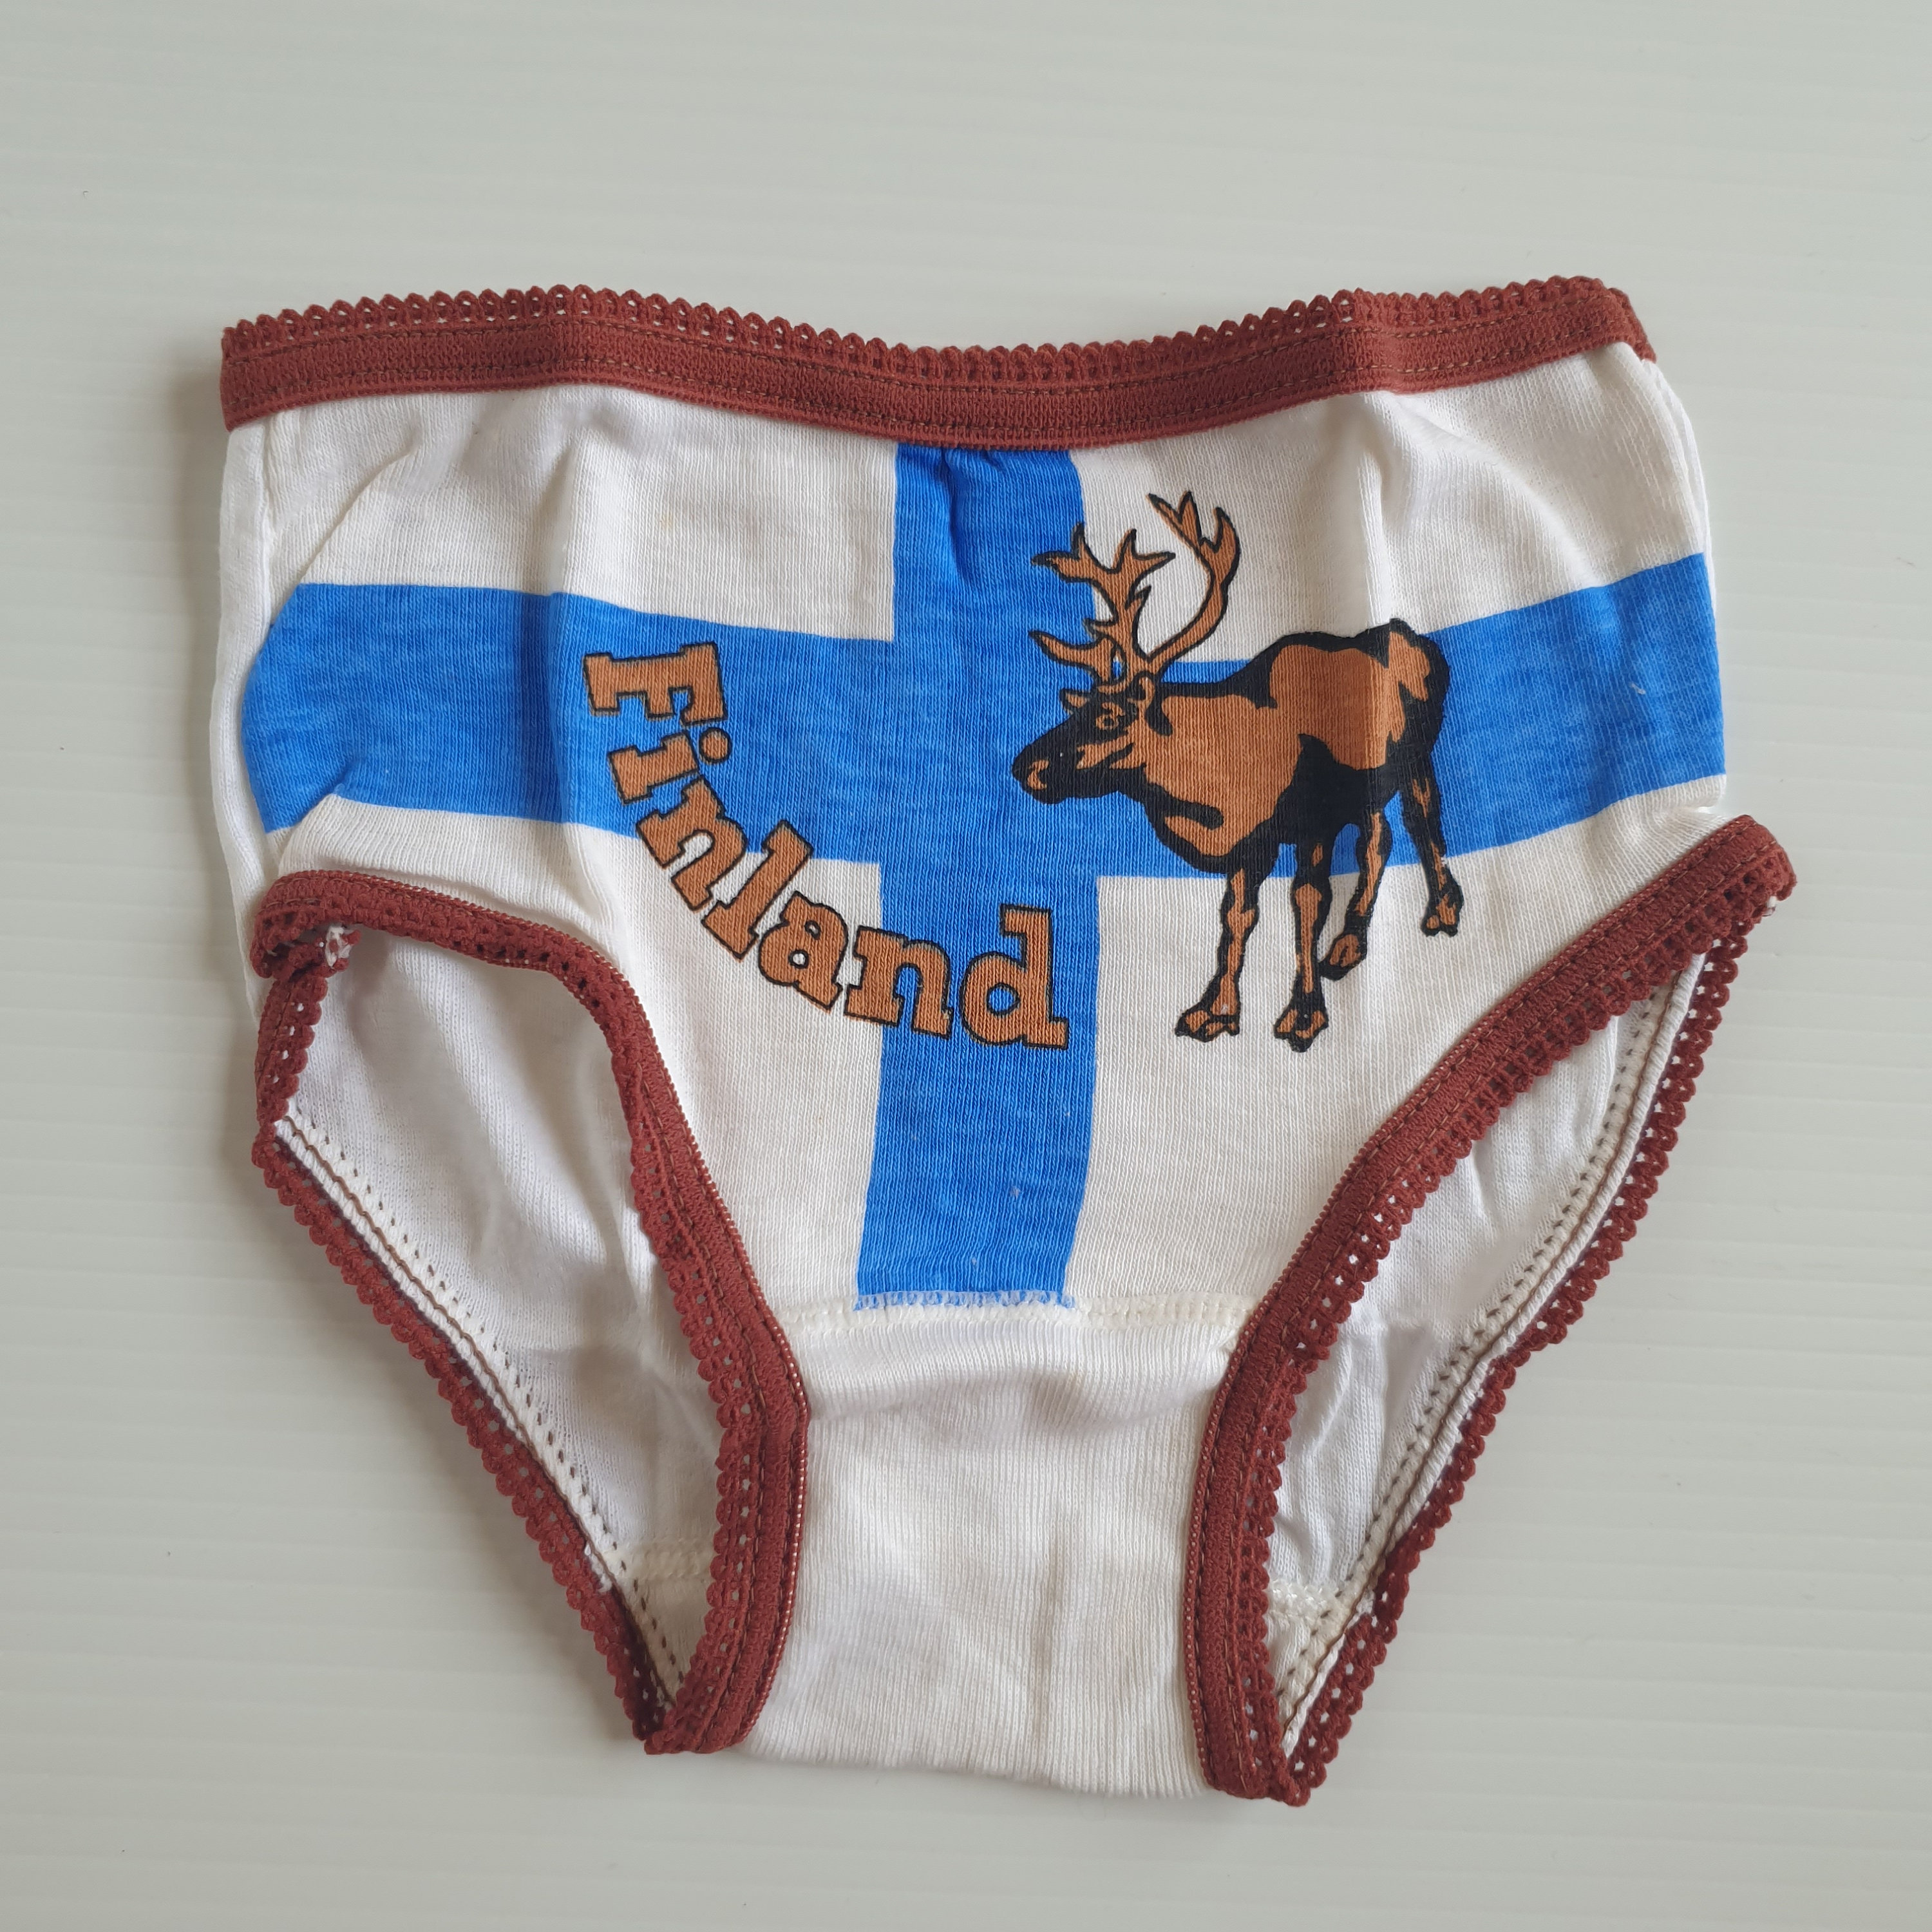 Size 2-3 Unused 1970s Kids Vintage Underwear Finland Toddler -  Israel